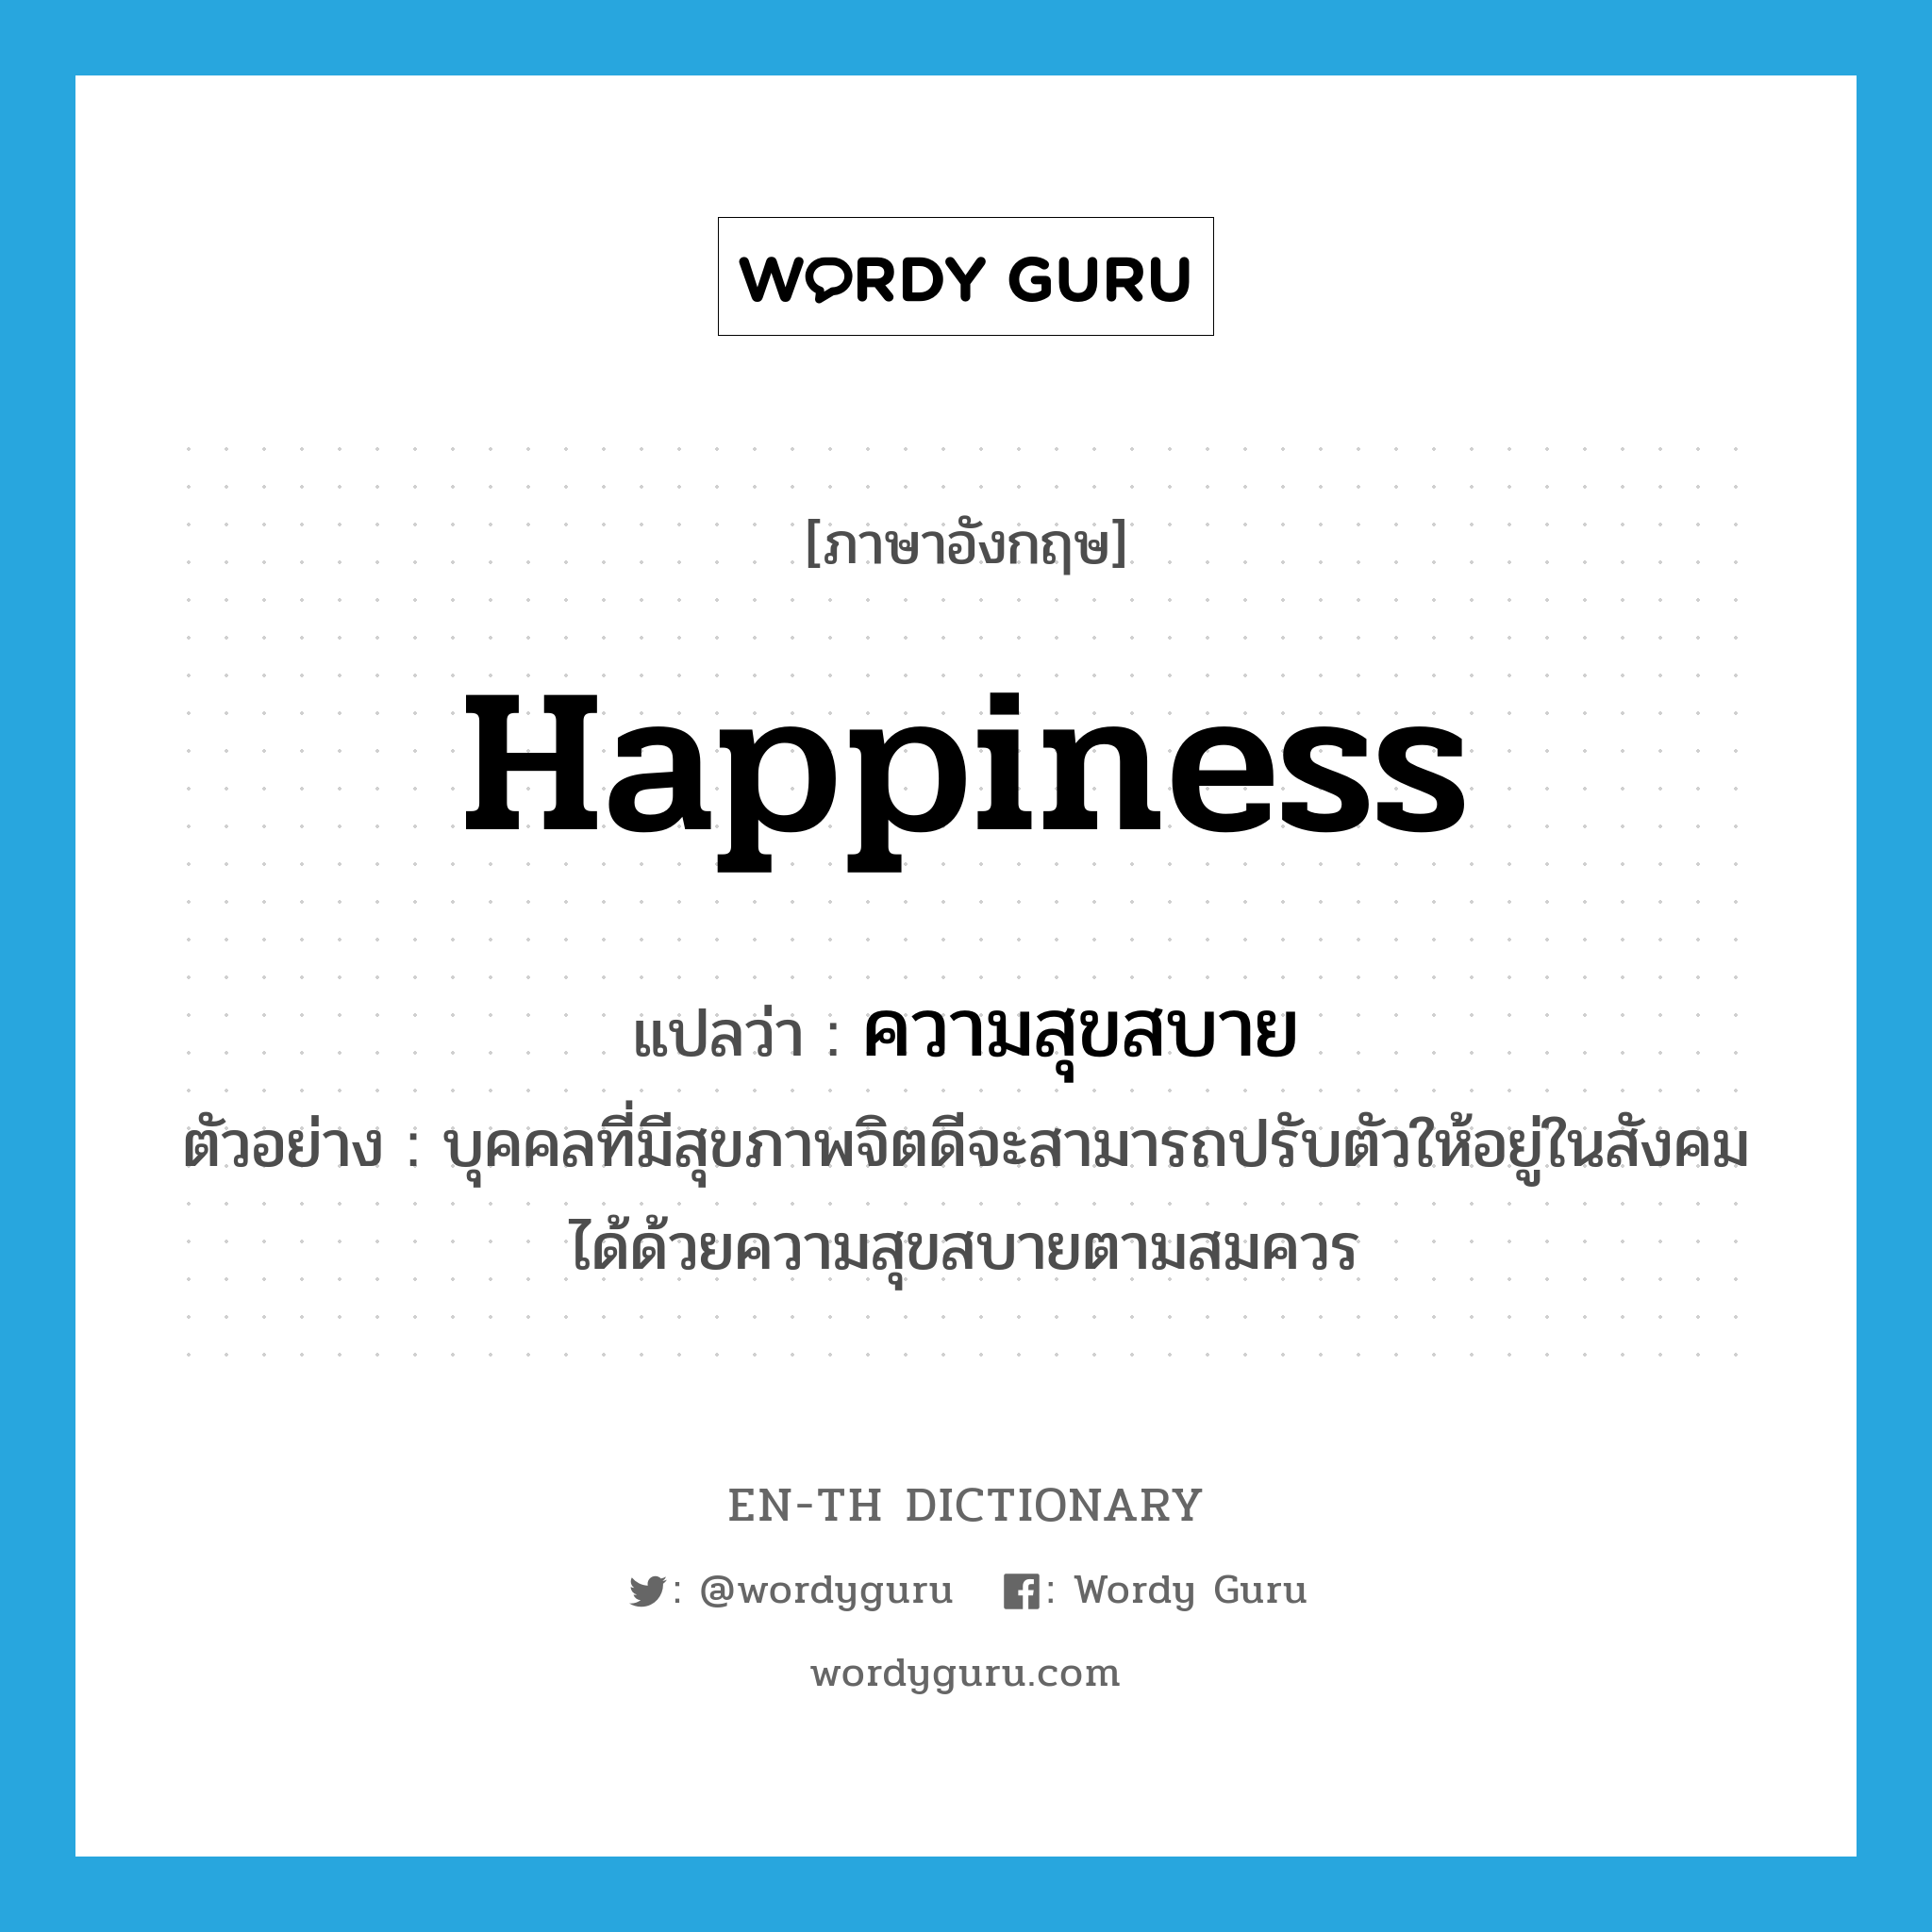 happiness แปลว่า?, คำศัพท์ภาษาอังกฤษ happiness แปลว่า ความสุขสบาย ประเภท N ตัวอย่าง บุคคลที่มีสุขภาพจิตดีจะสามารถปรับตัวให้อยู่ในสังคมได้ด้วยความสุขสบายตามสมควร หมวด N